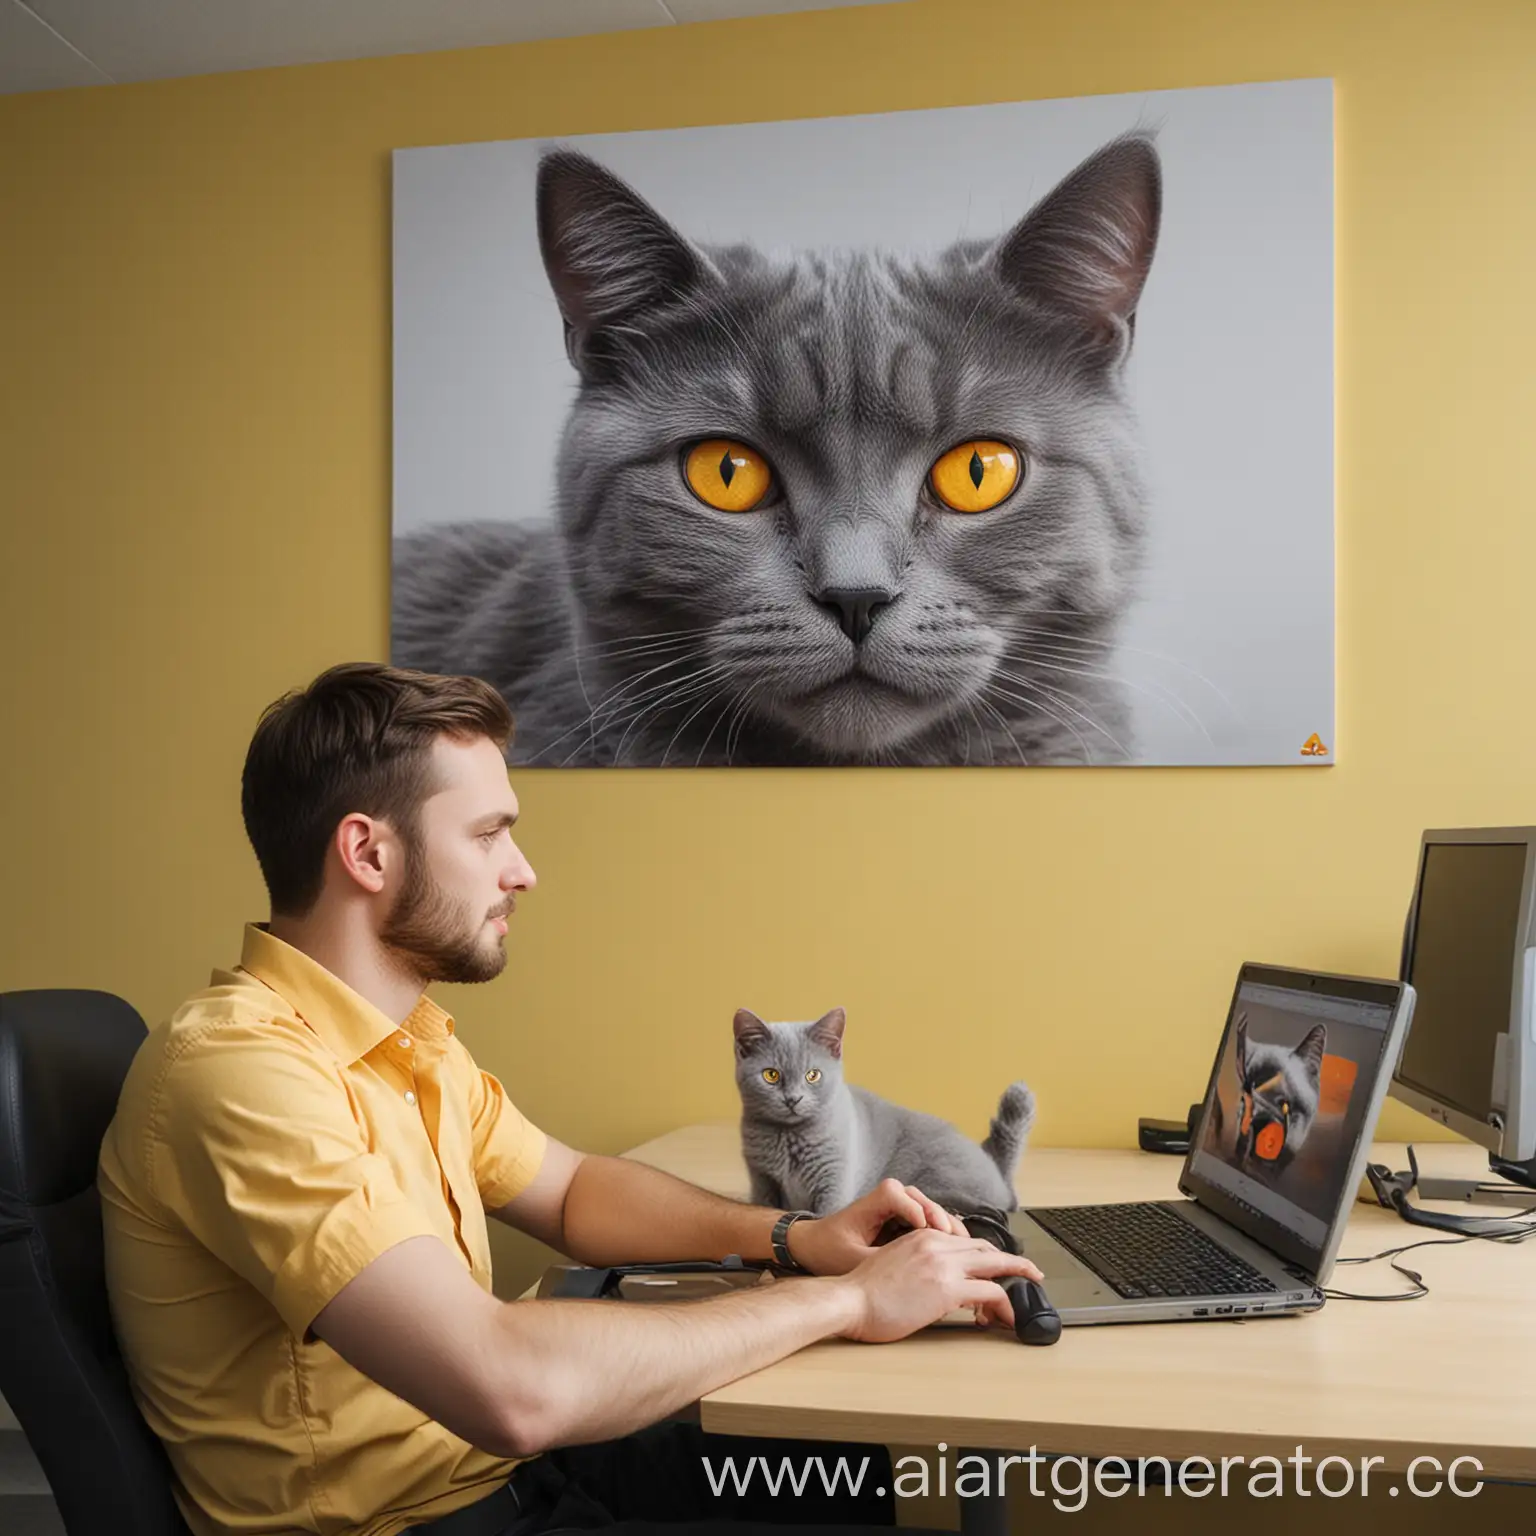 Мужчина в офисе Яндекса сидит за компьютером и работает, рядом лежит его серый кот с оранжевыми глазами и на фоне на стене висит картина, как он едет на машине. Основной цвет офиса - желтый. 